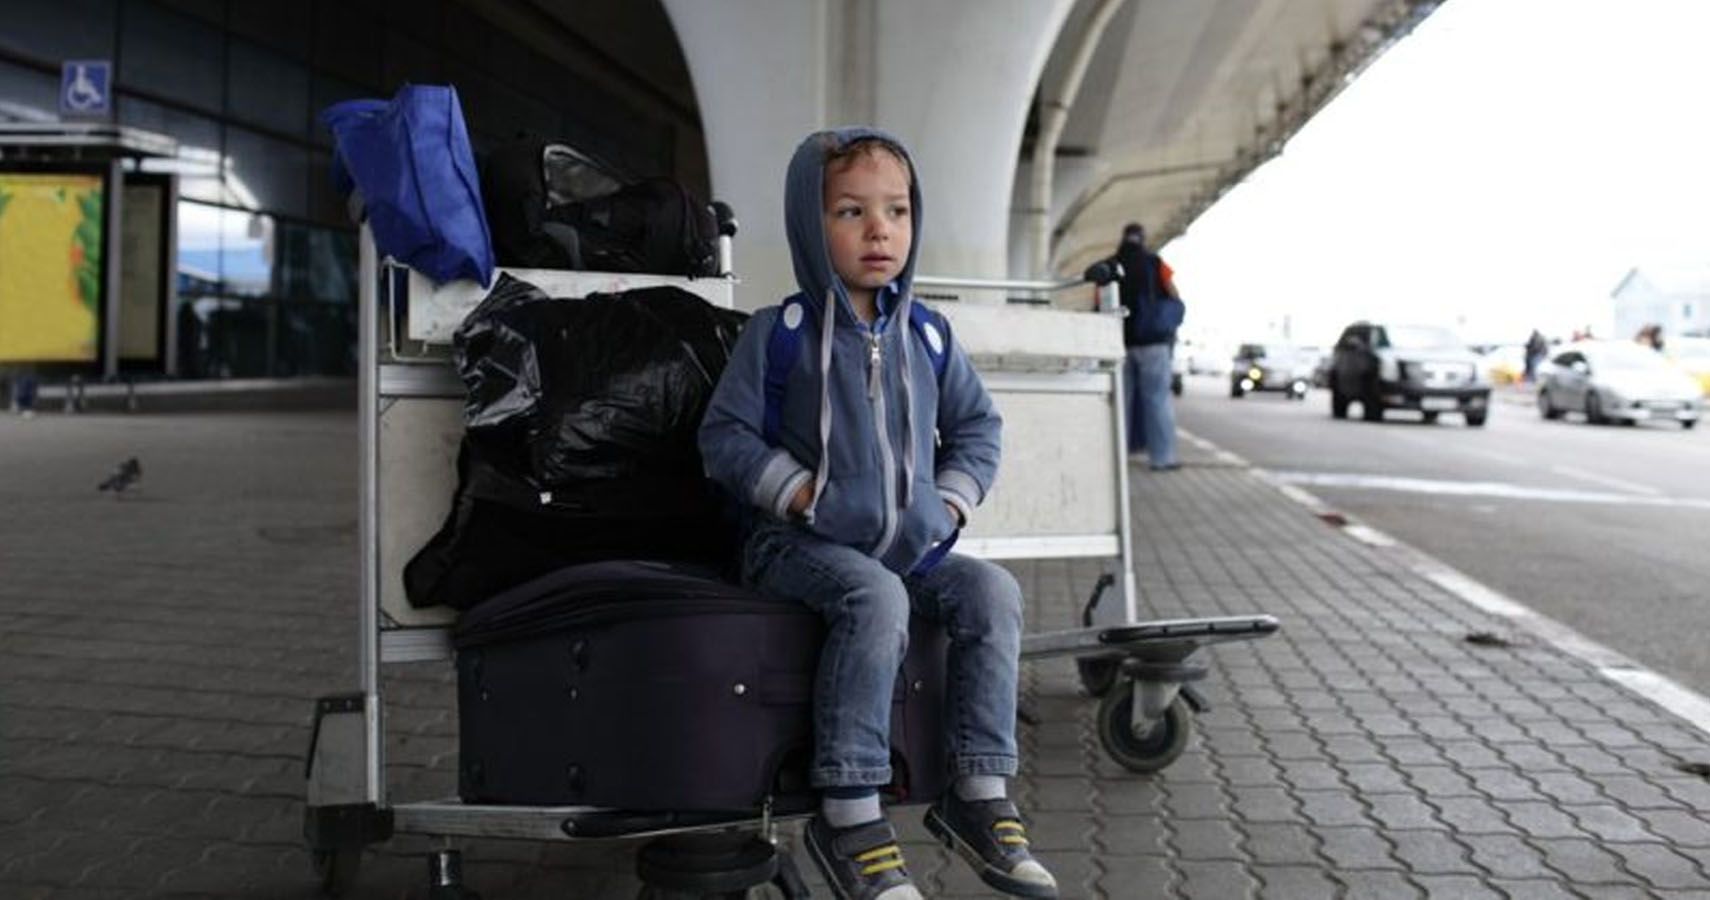 Pais esquecem filha de 5 anos em aeroporto alemao apos